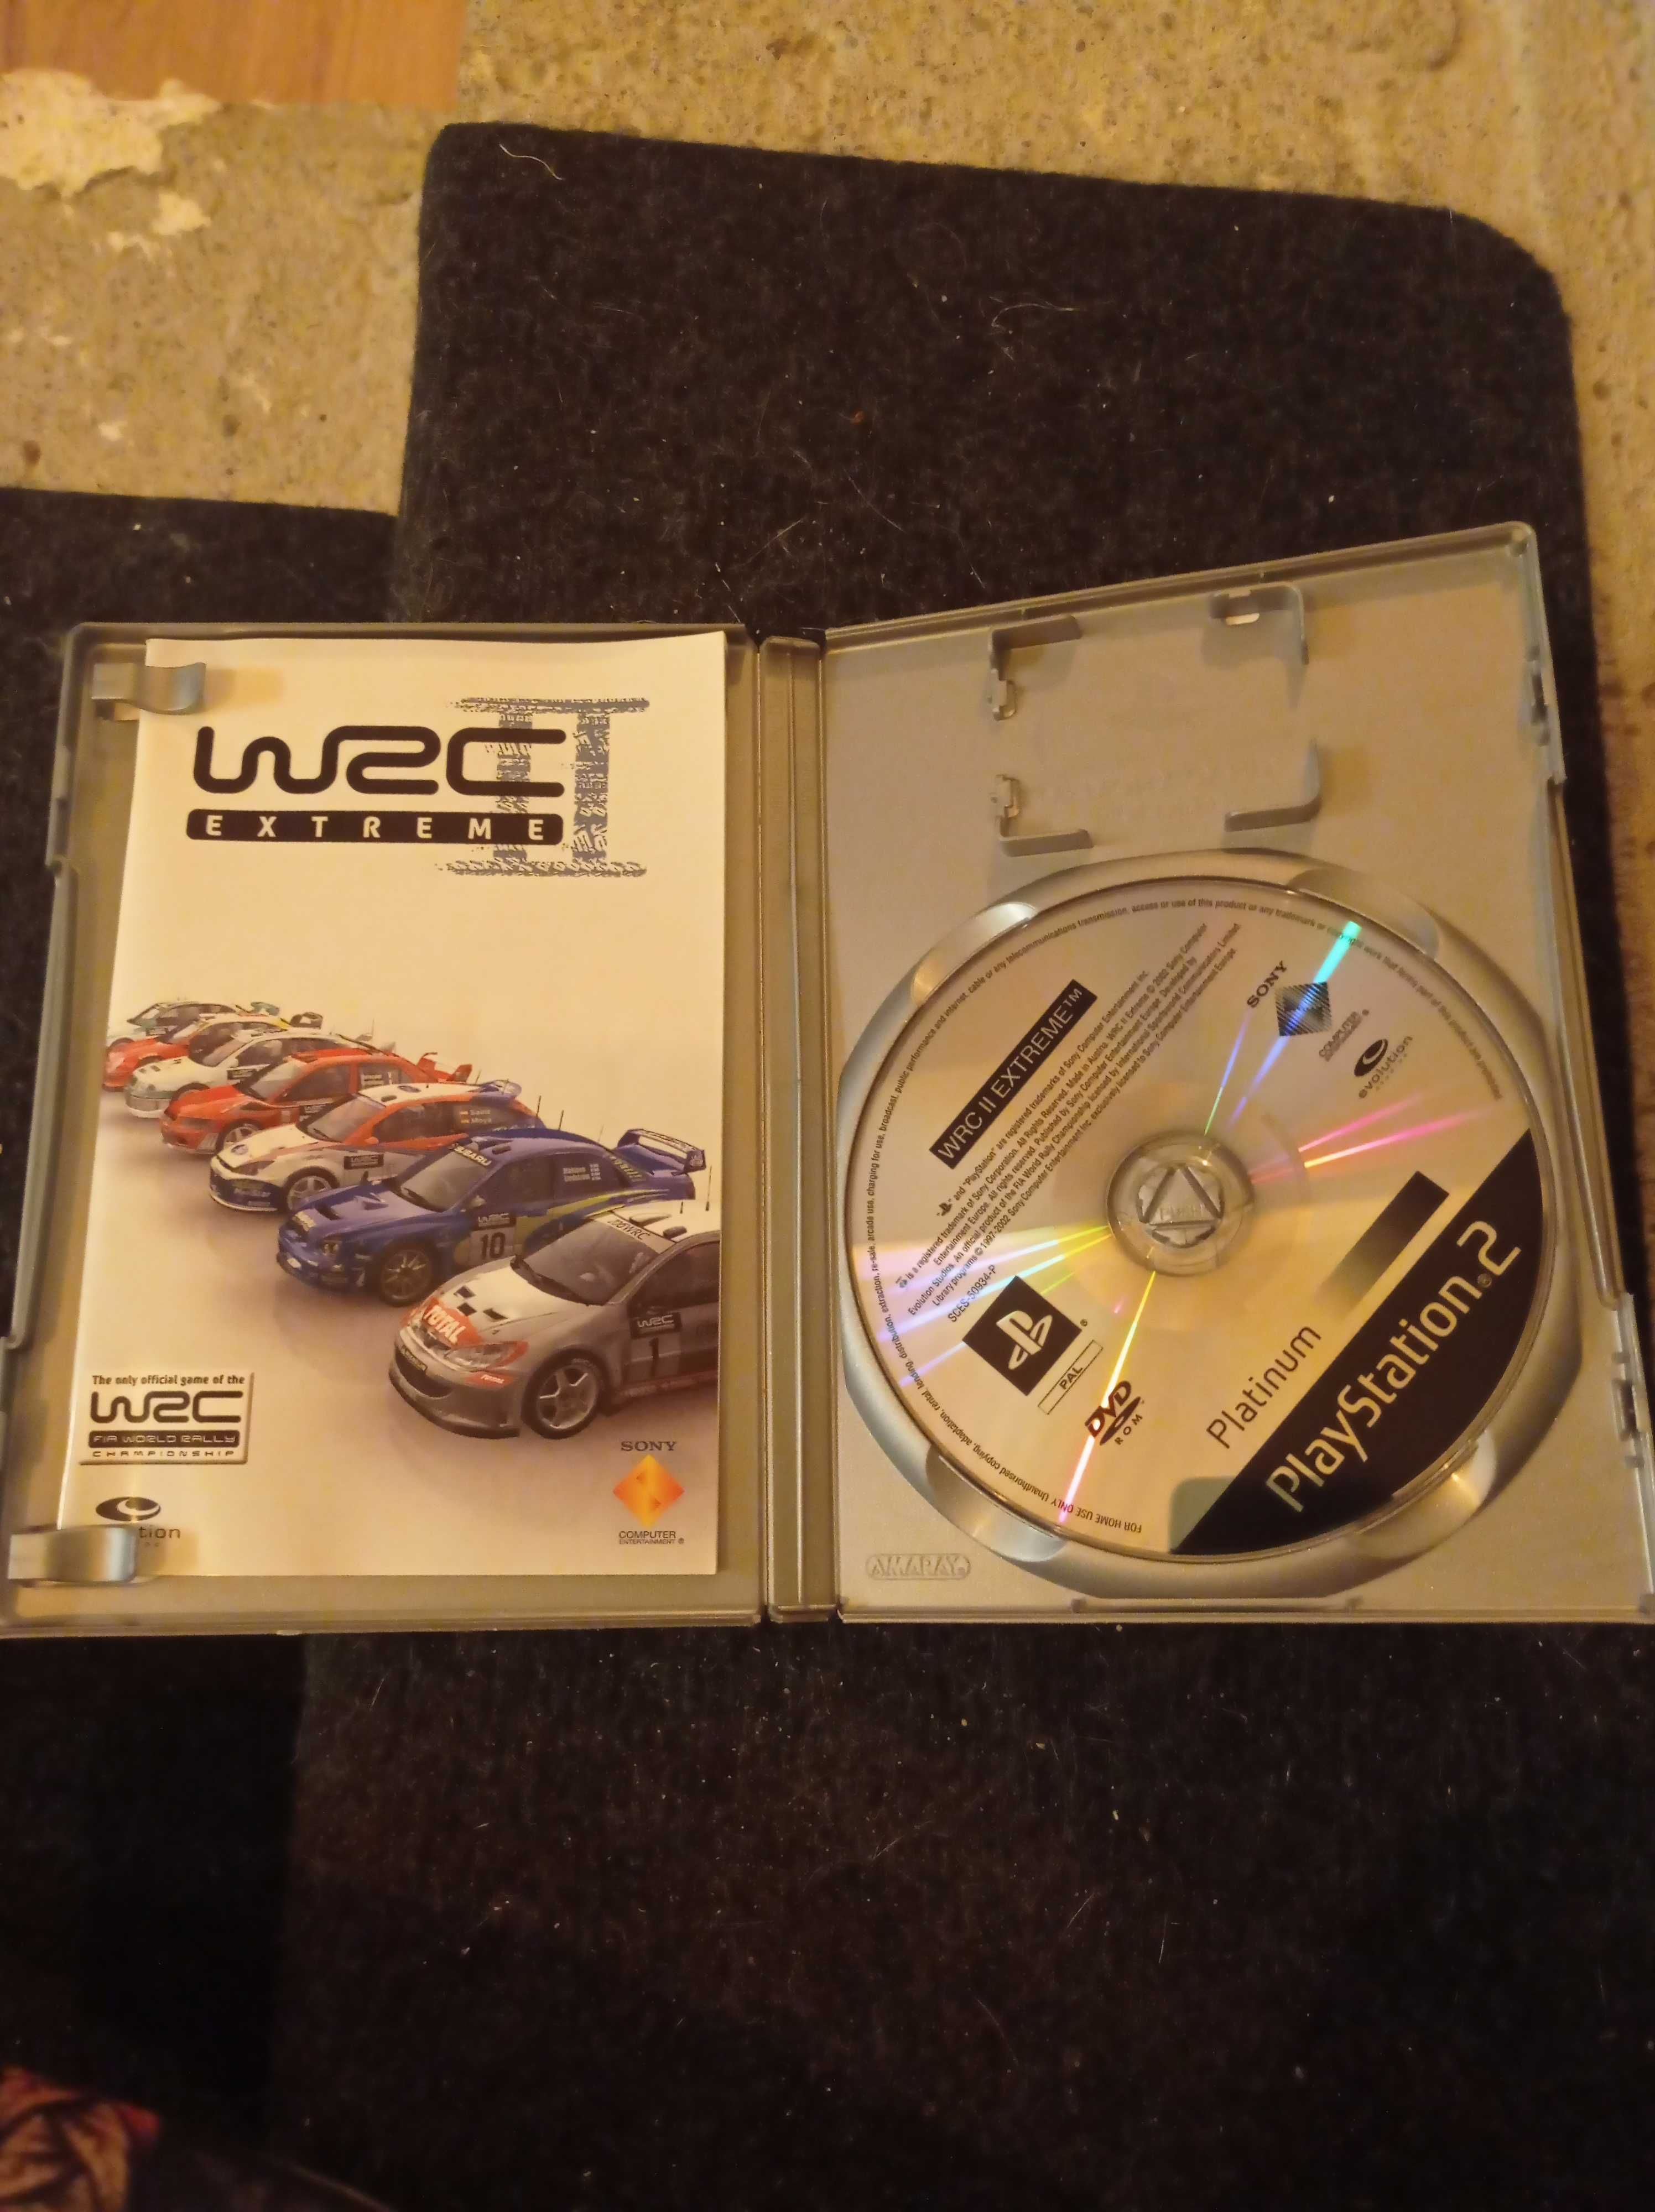 Gra WRC II Extreme PlayStation 2